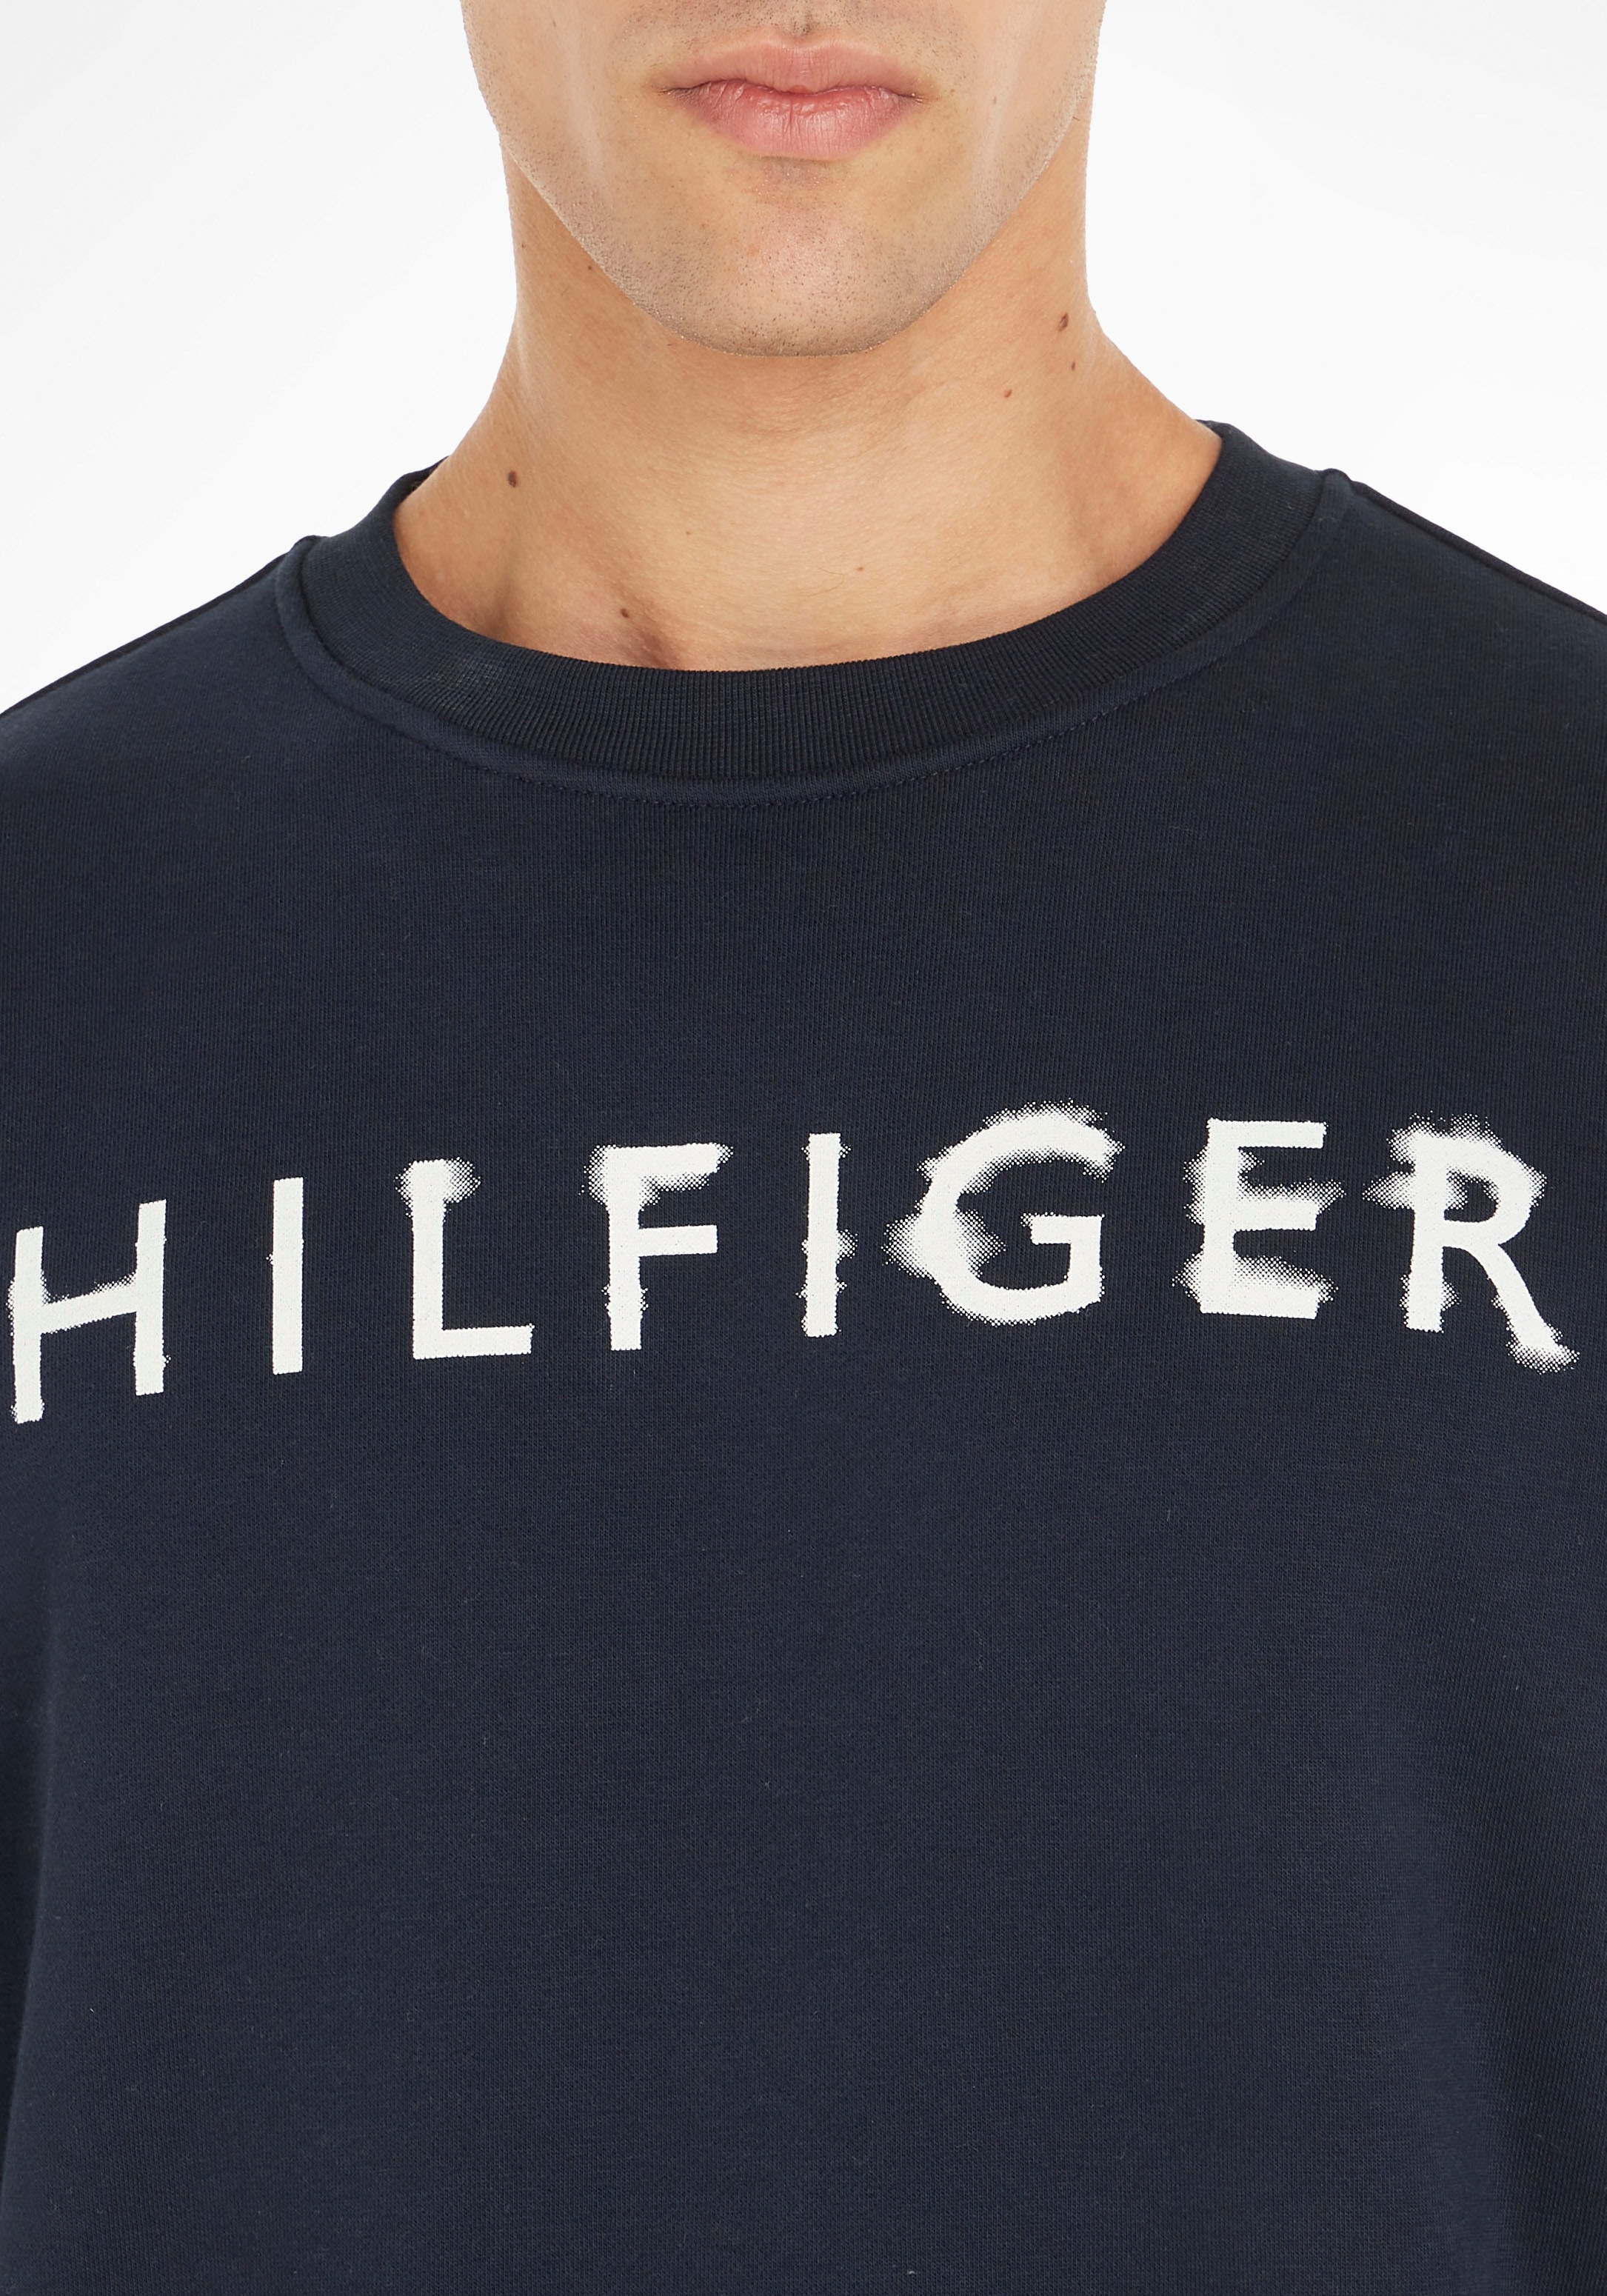 Tommy OTTO »HILFIGER online CREWNECK« Sweatshirt bestellen INK Hilfiger bei